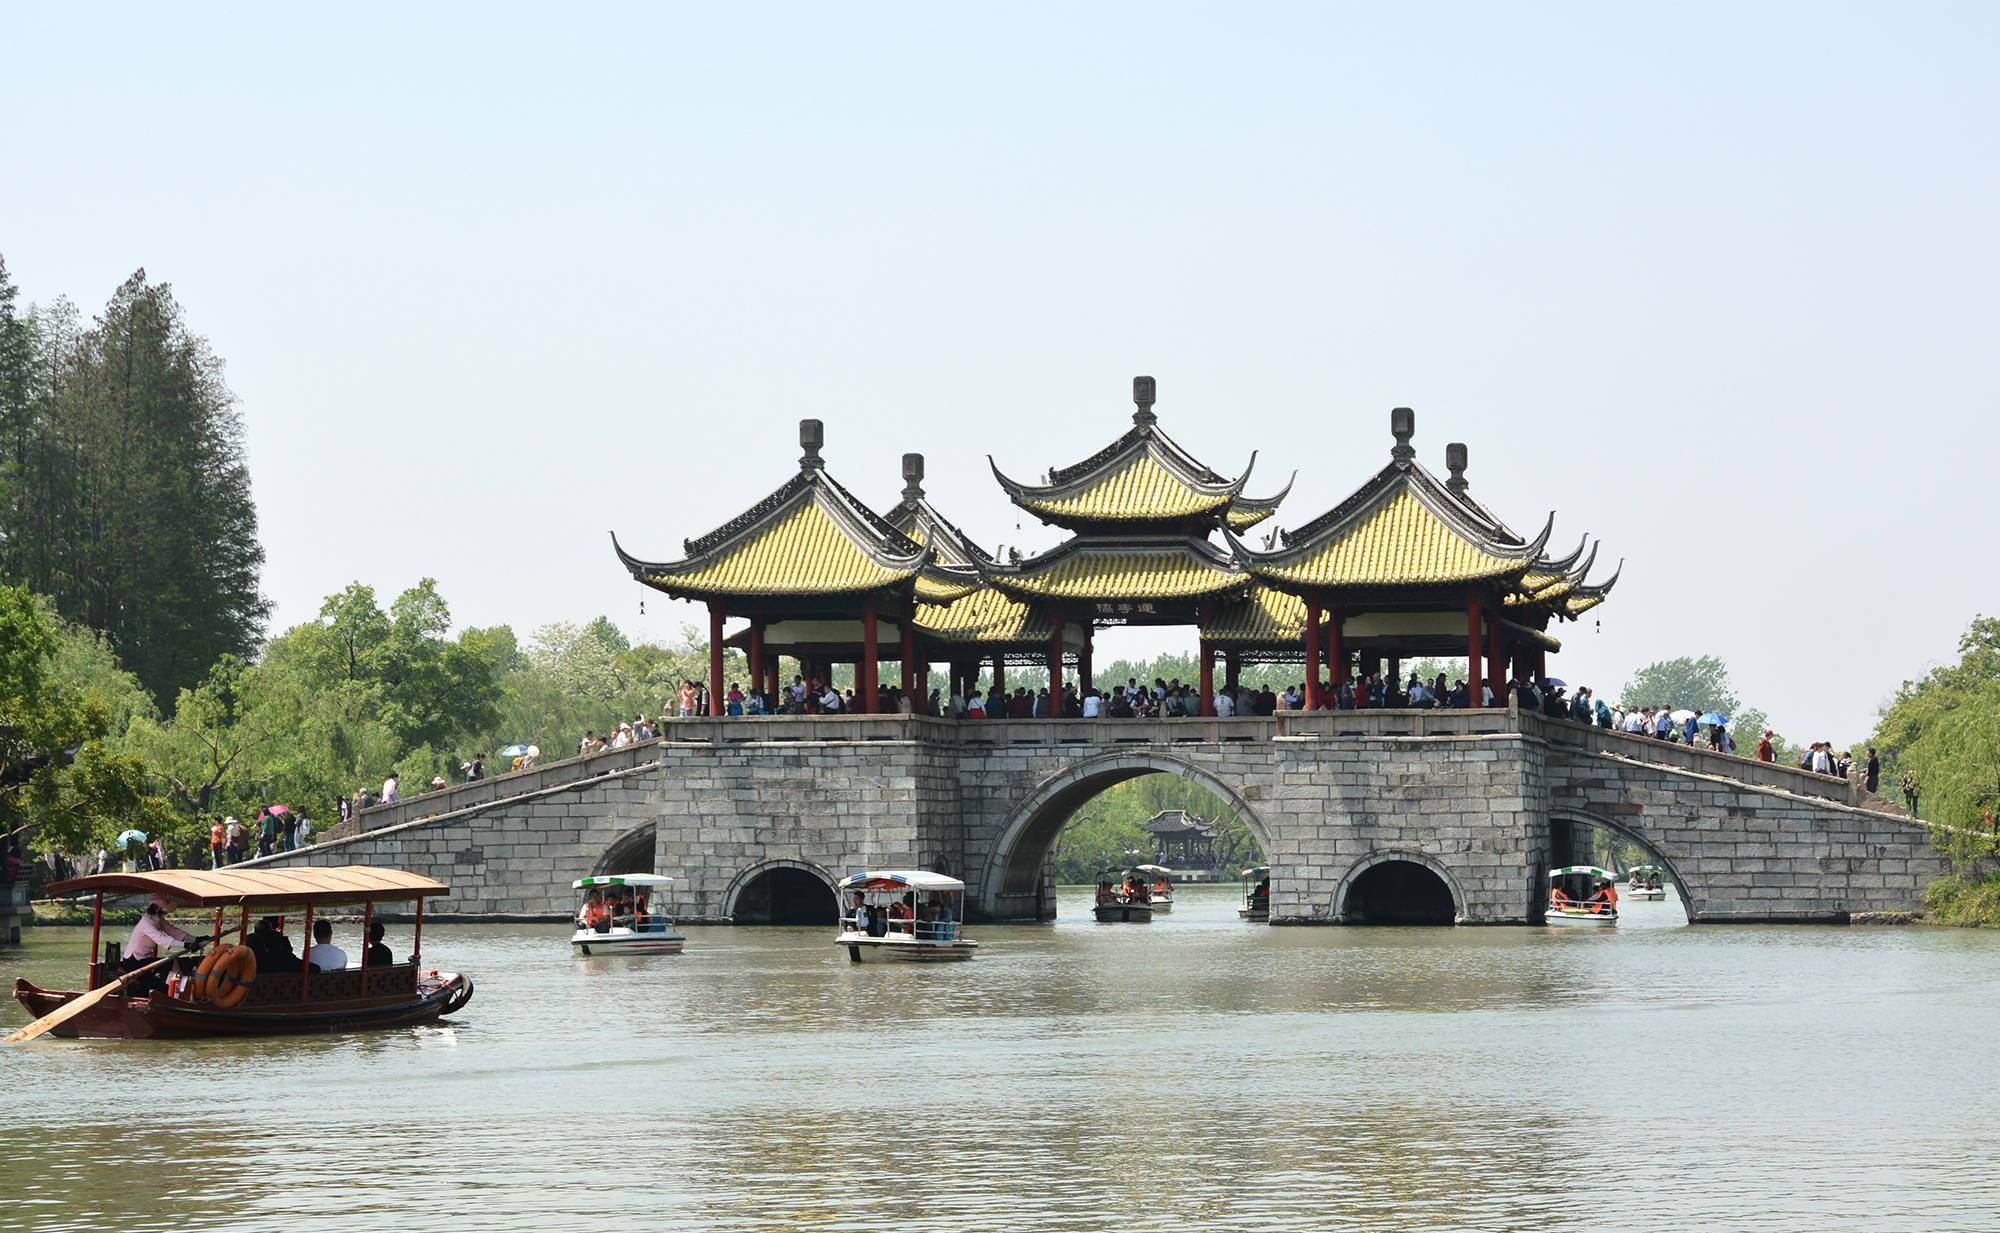 大虹桥,吹台,凫庄,望春楼等景点组成,其中最著名的是五亭桥,也是扬州